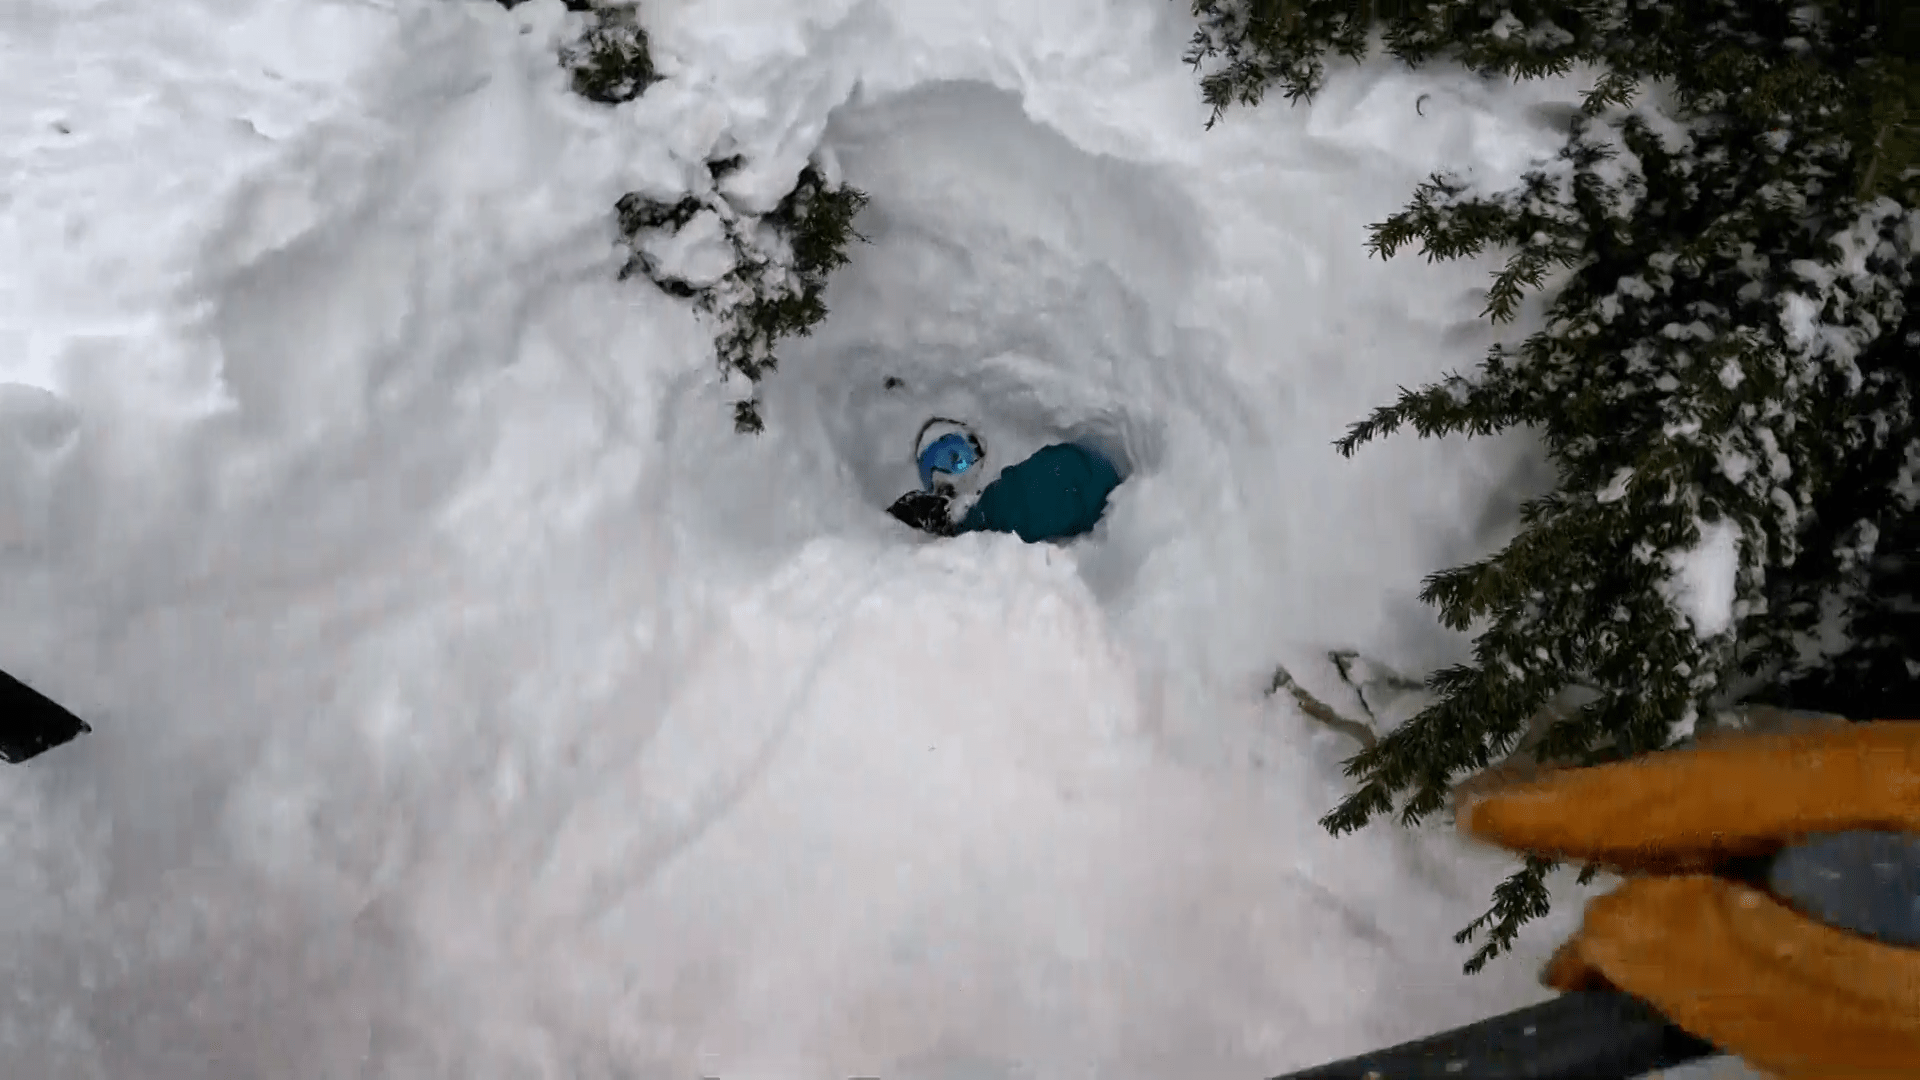 Po několika minutách se mu podařilo odhrabat sníh natolik, aby viděl hlavu zavaleného snowboardisty. 